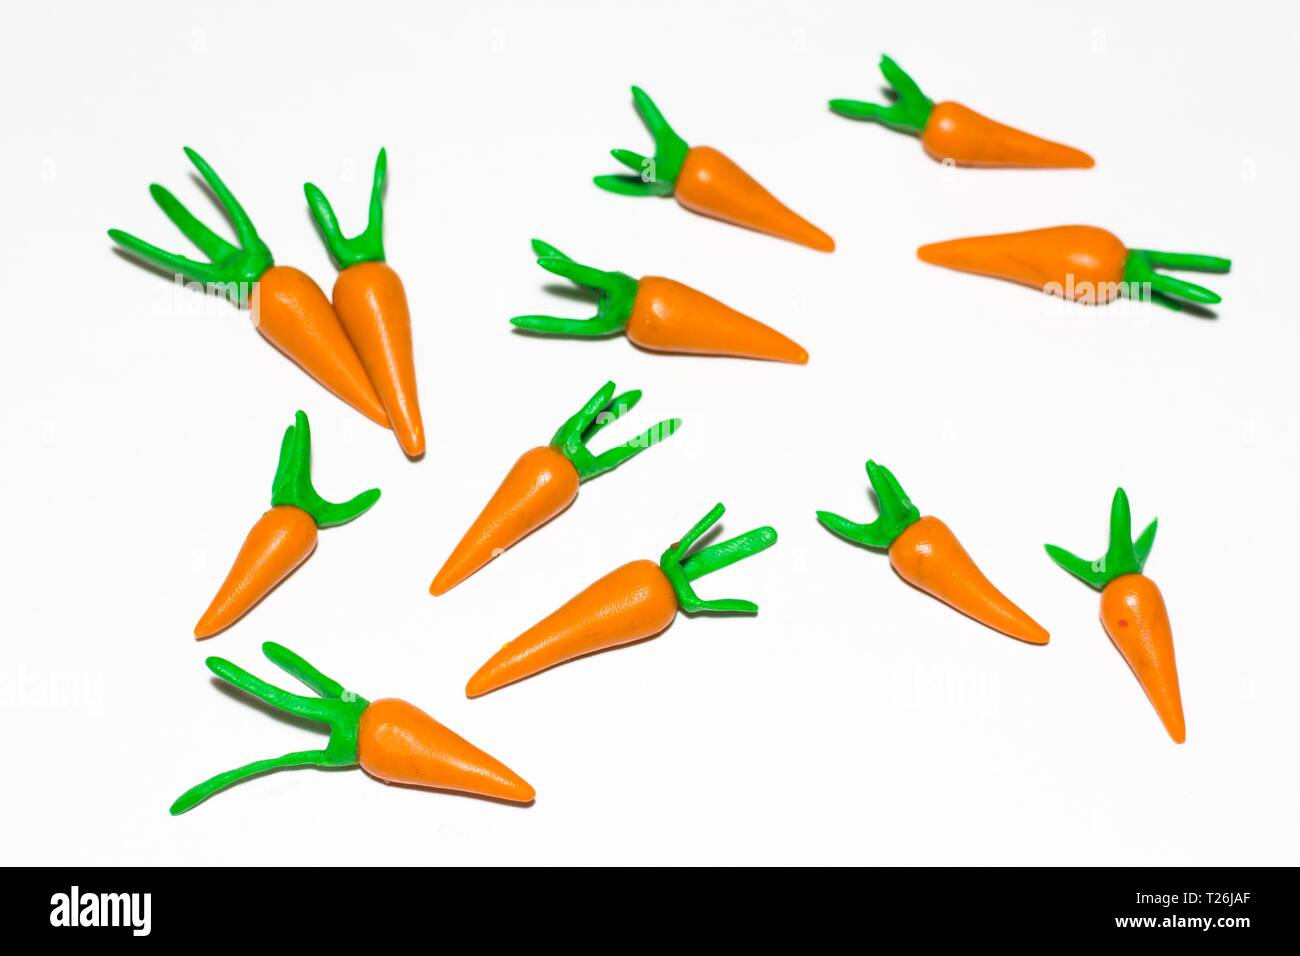 Varias zanahorias sobre un fondo blanco hecho de plastilina. Las zanahorias mentira aleatoriamente con cada otro. Foto de stock